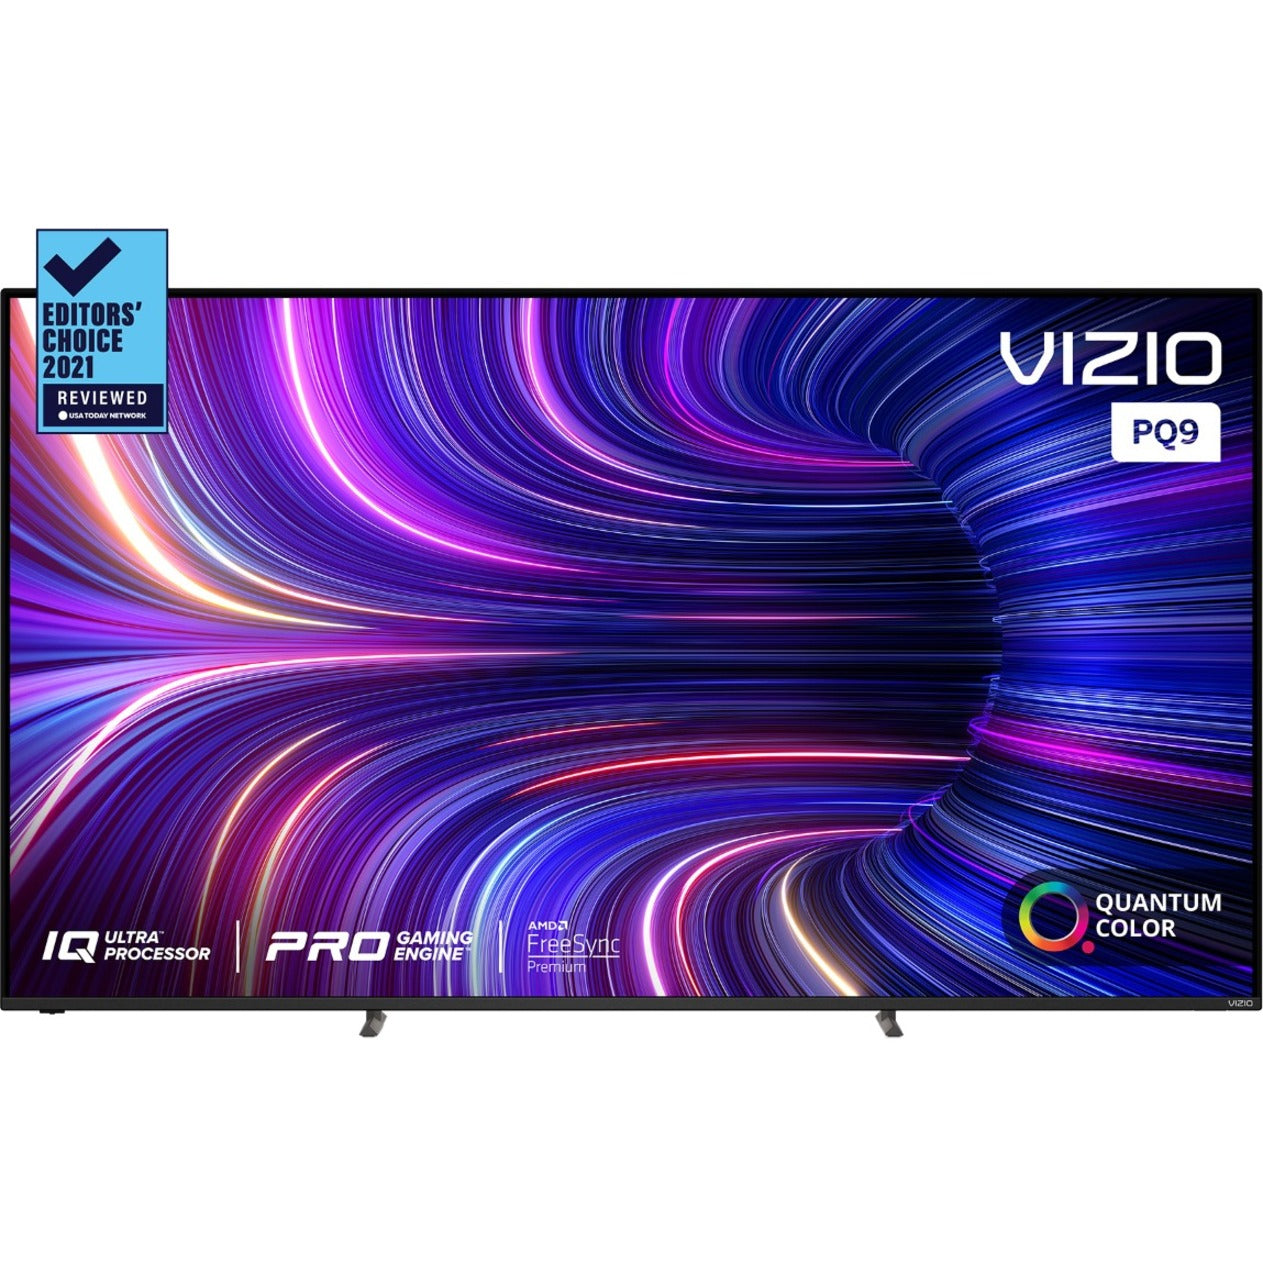 VIZIO P75Q9-J01 P-Series Quantum 75" Class 4K HDR Smart TV, Clear Action 960, 120Hz Refresh Rate